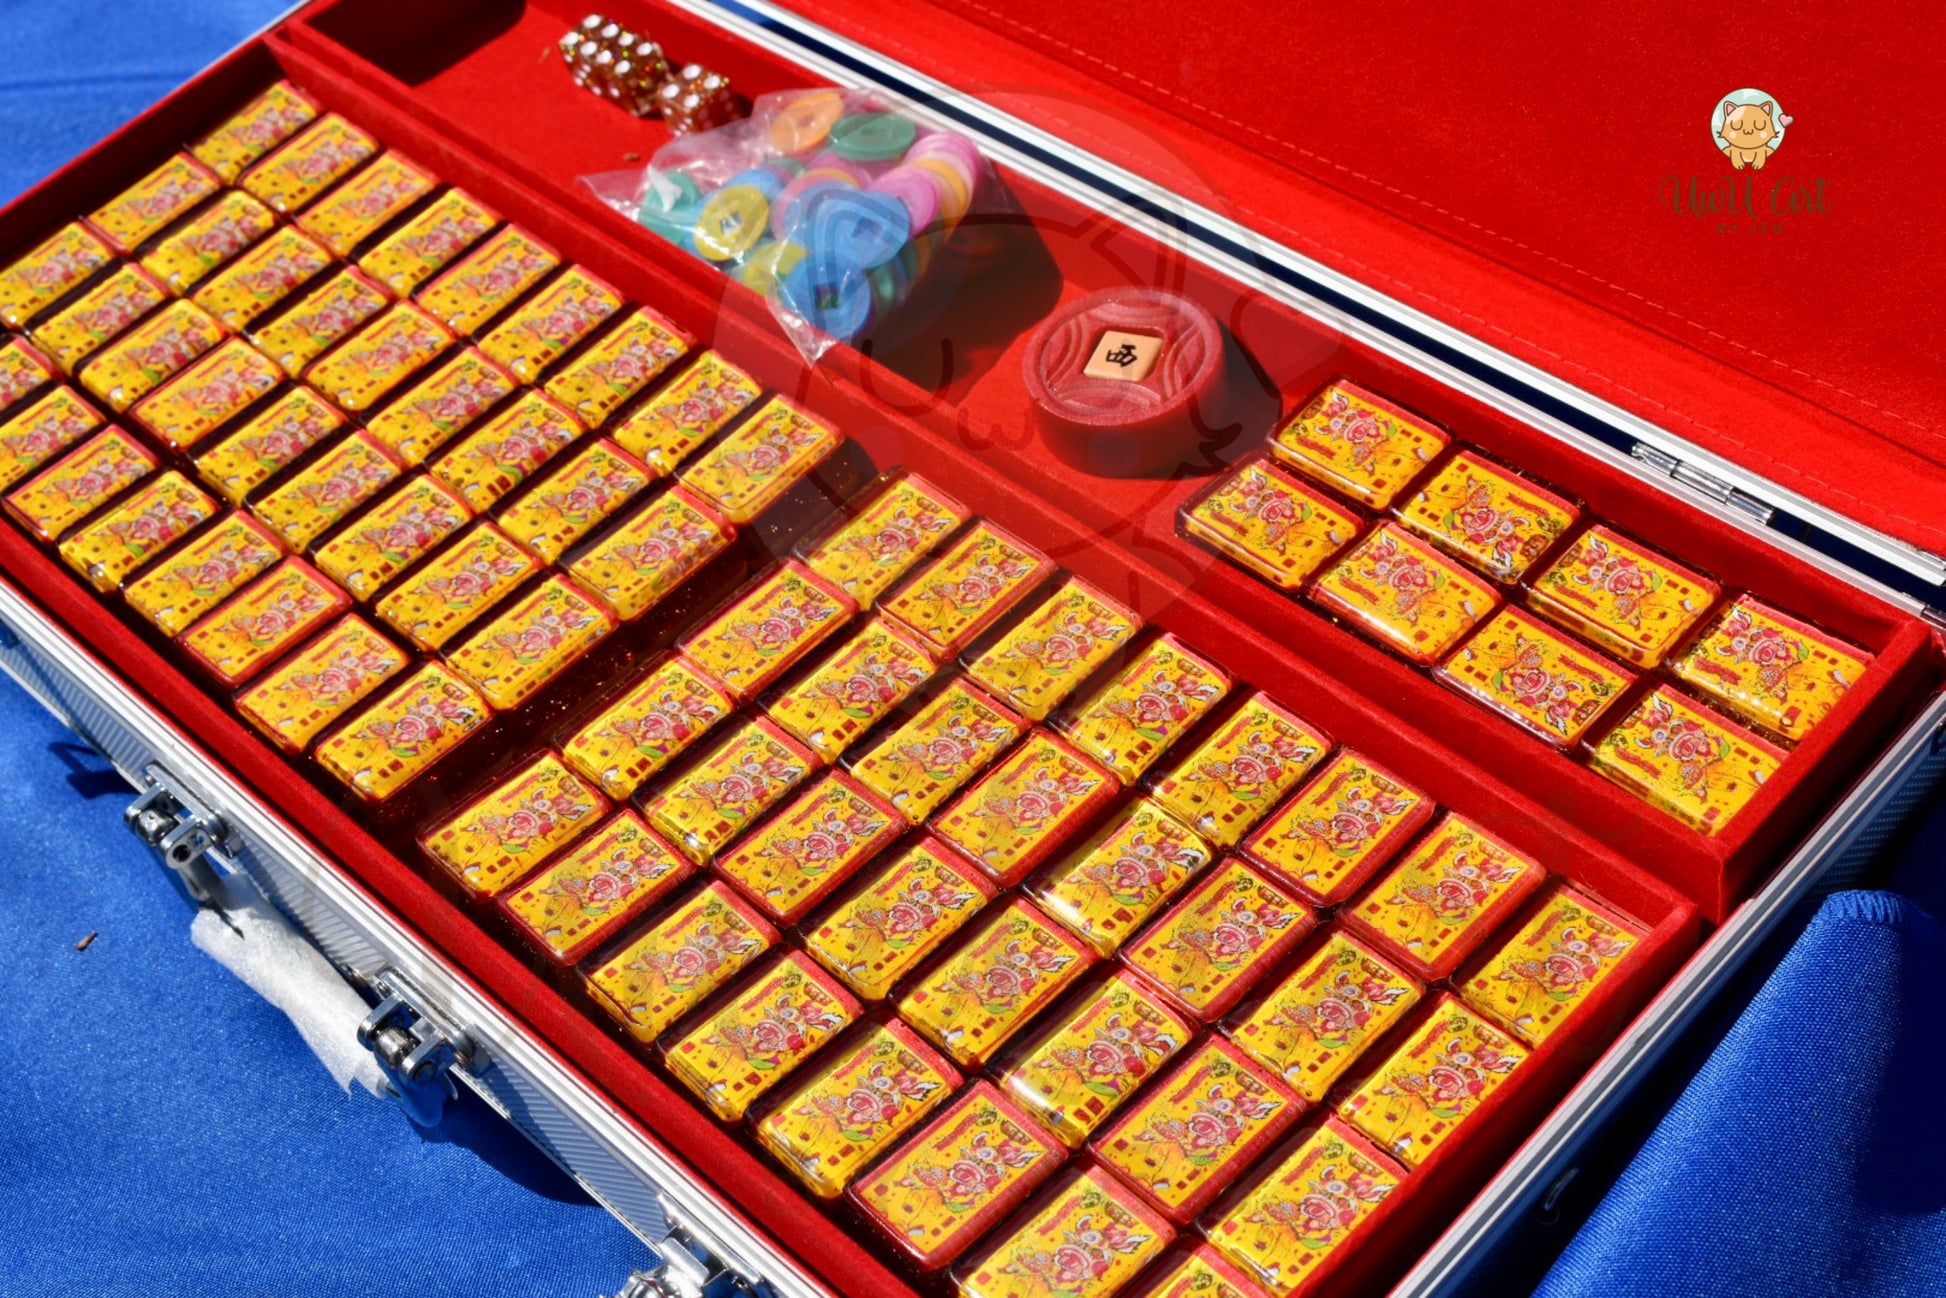 Mahjong Set  Mahjong Game Set